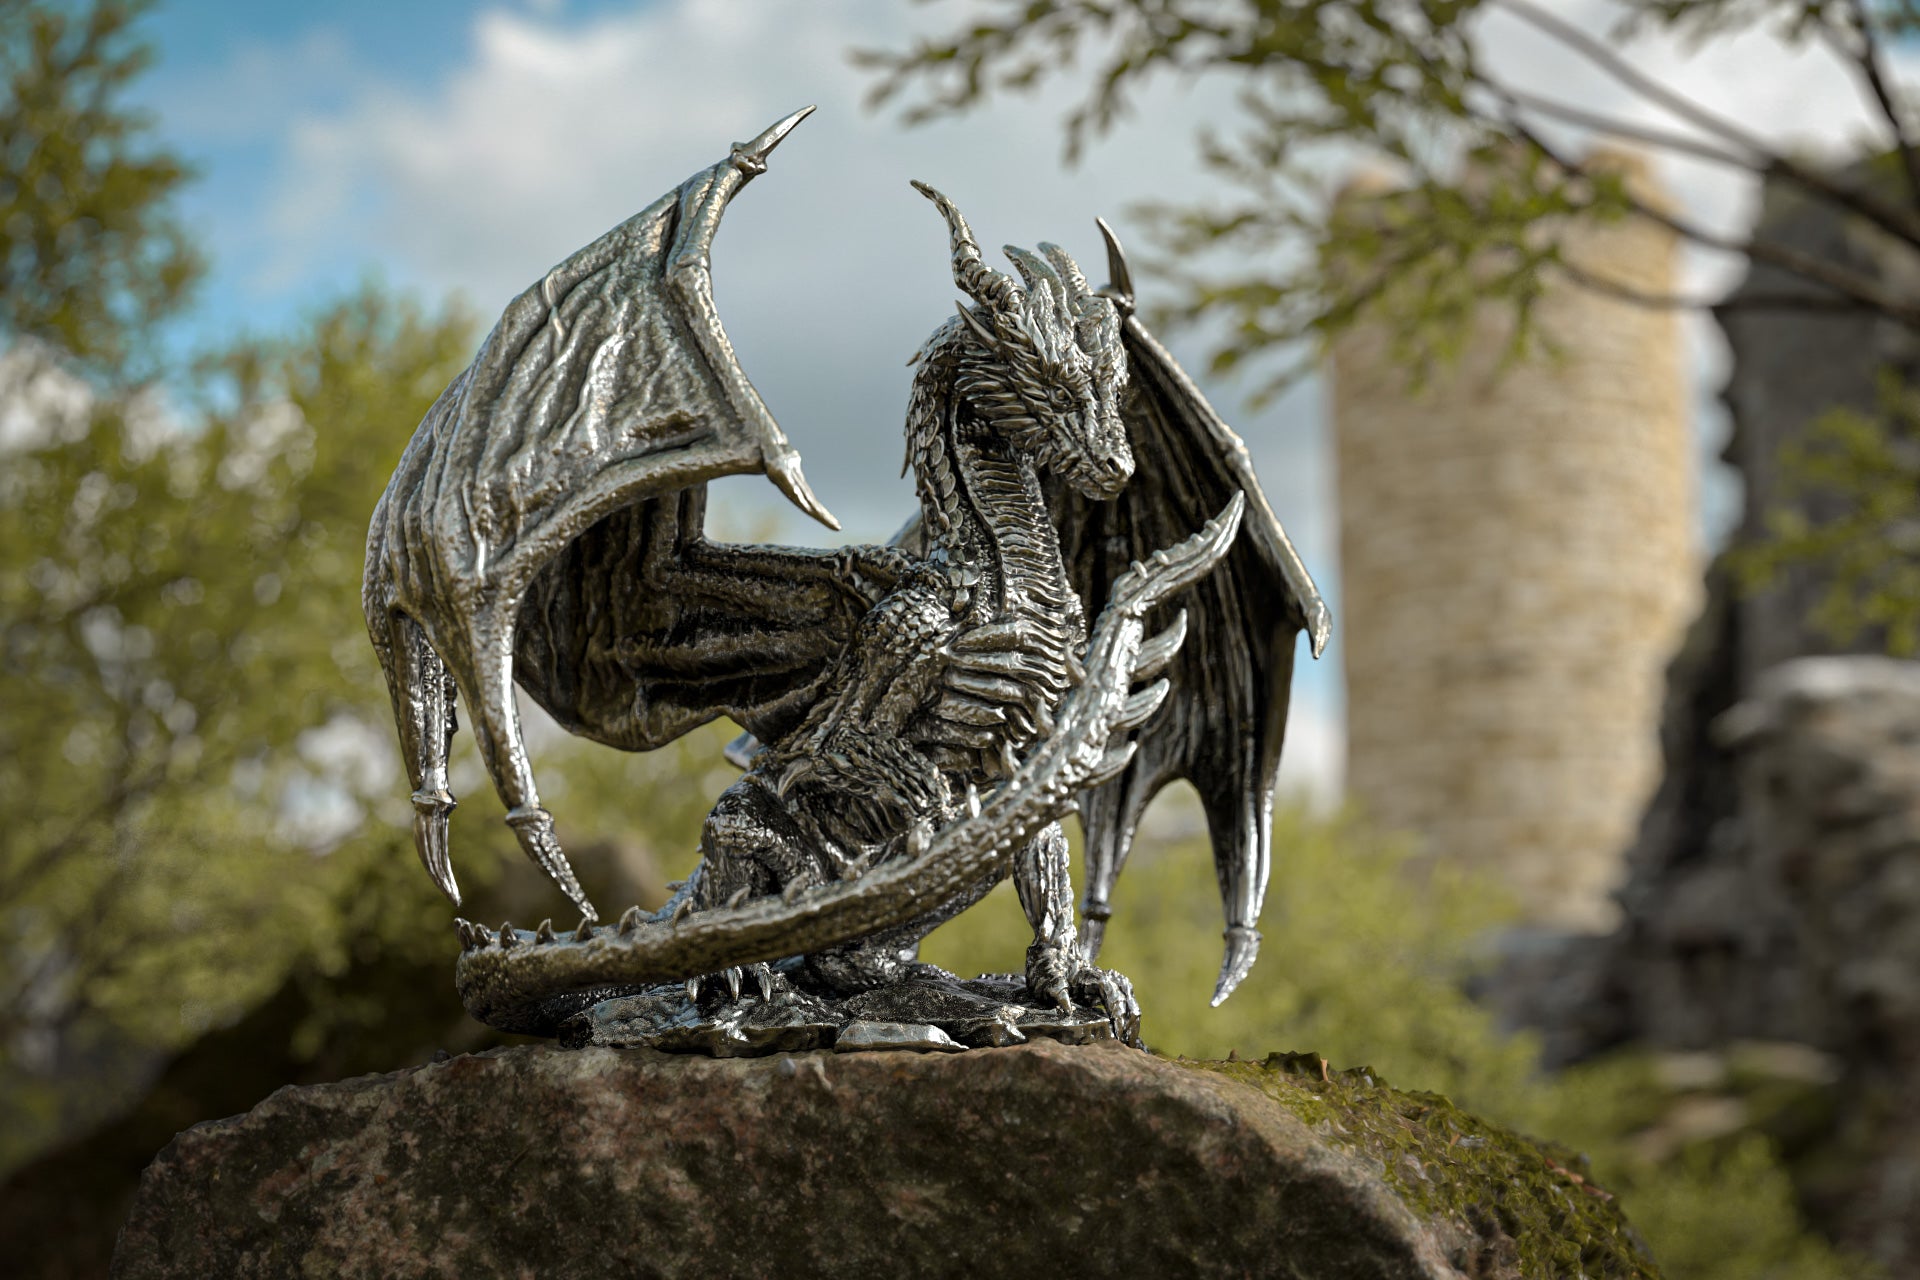 Fairies & Fantasy Silver Statues - Unicorn, Coco the Dragon